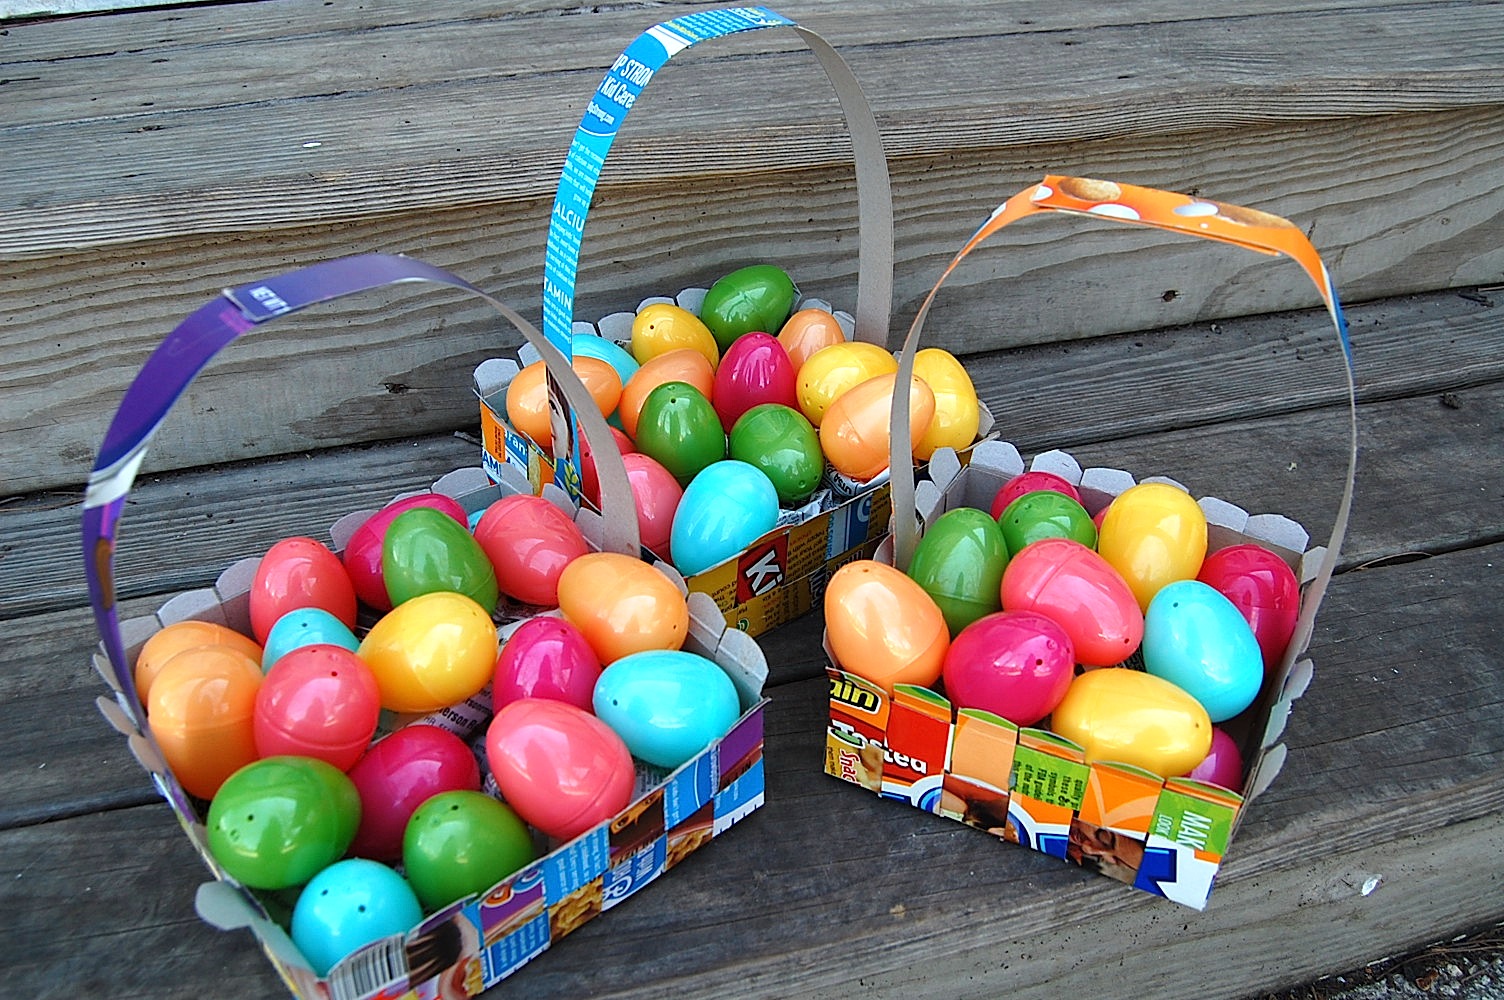 Designer Easter Baskets